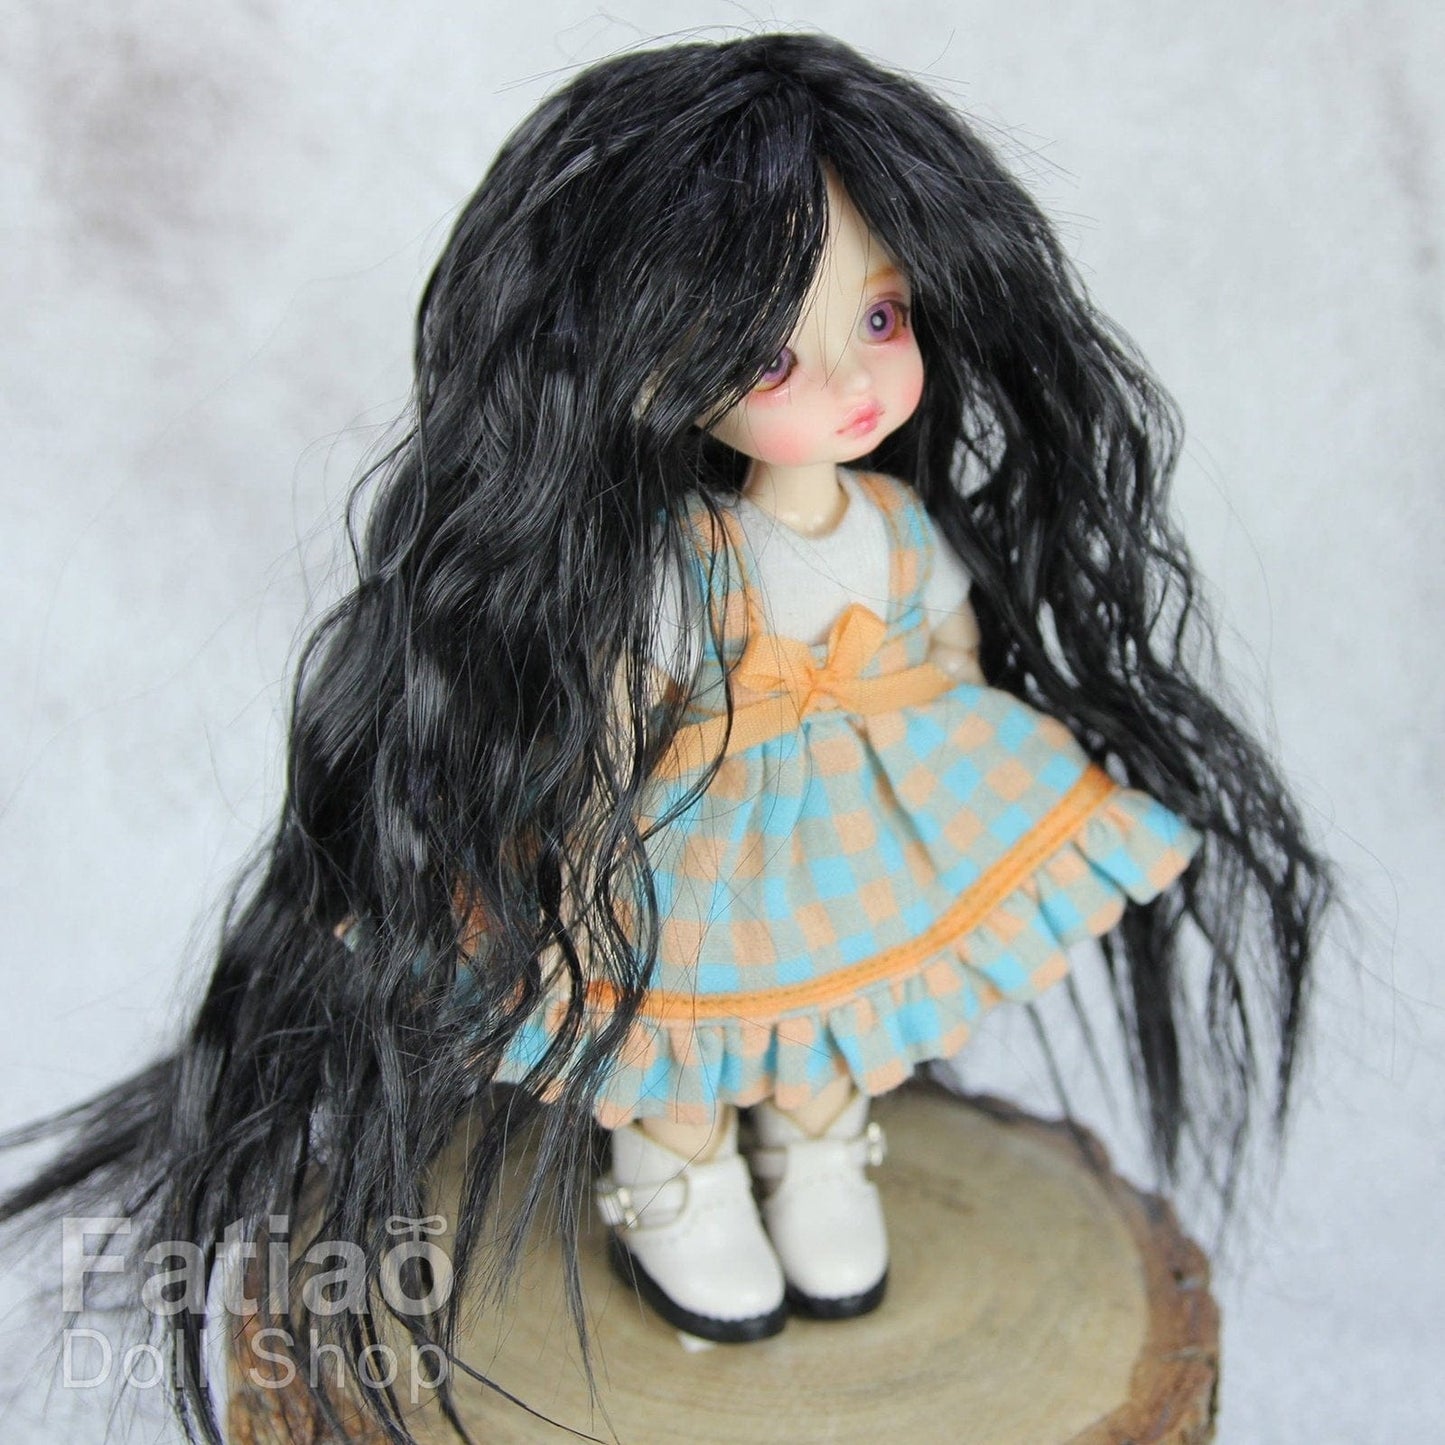 【Fatiao Doll Shop】FWF-022 娃用假髮 多色 / 3-4吋 BJD 12分 ob11